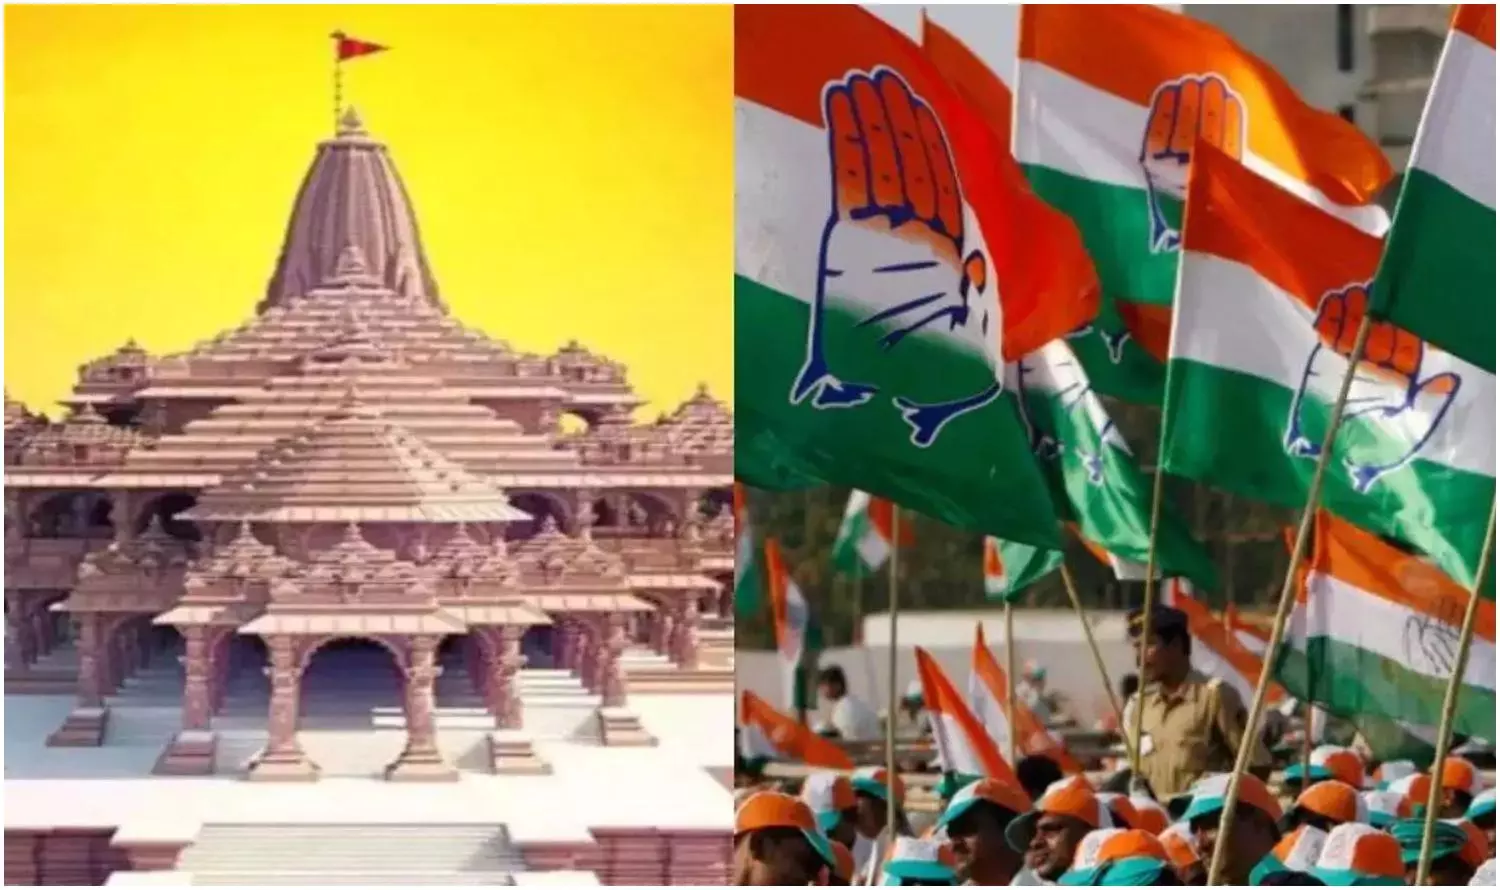 Ram Mandir: मंदिर तो कांग्रेस का चुनावी नारा था! सोशलिस्ट विरोधी थे, हार गए !!